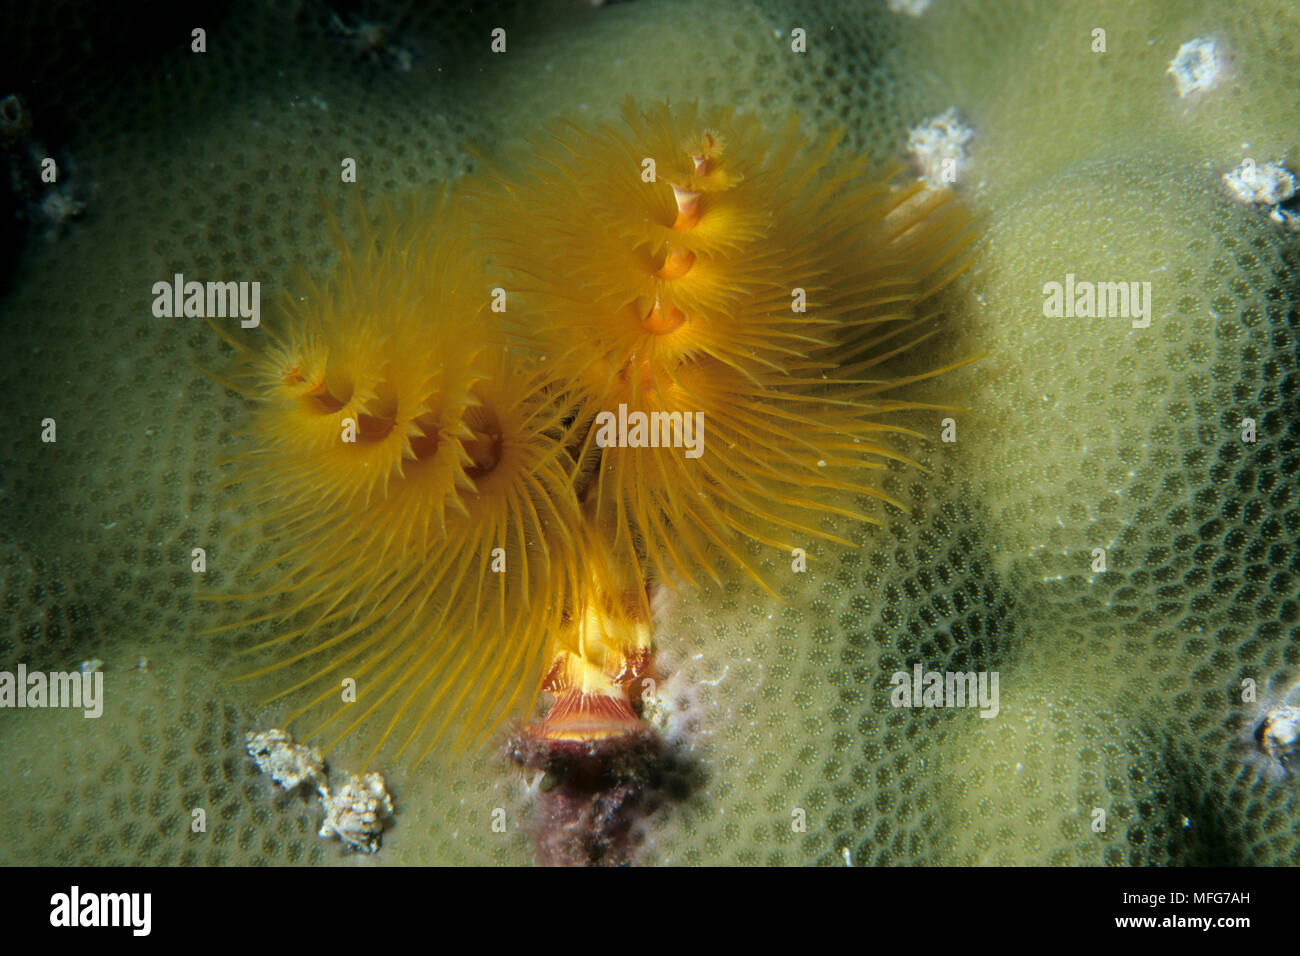 Albero di natale di worm, Spirobranchus giganteus, Aldabra Atoll, patrimonio mondiale naturale, Seychelles, Oceano Indiano Data: 24.06.08 RIF: ZB777 115630  Foto Stock